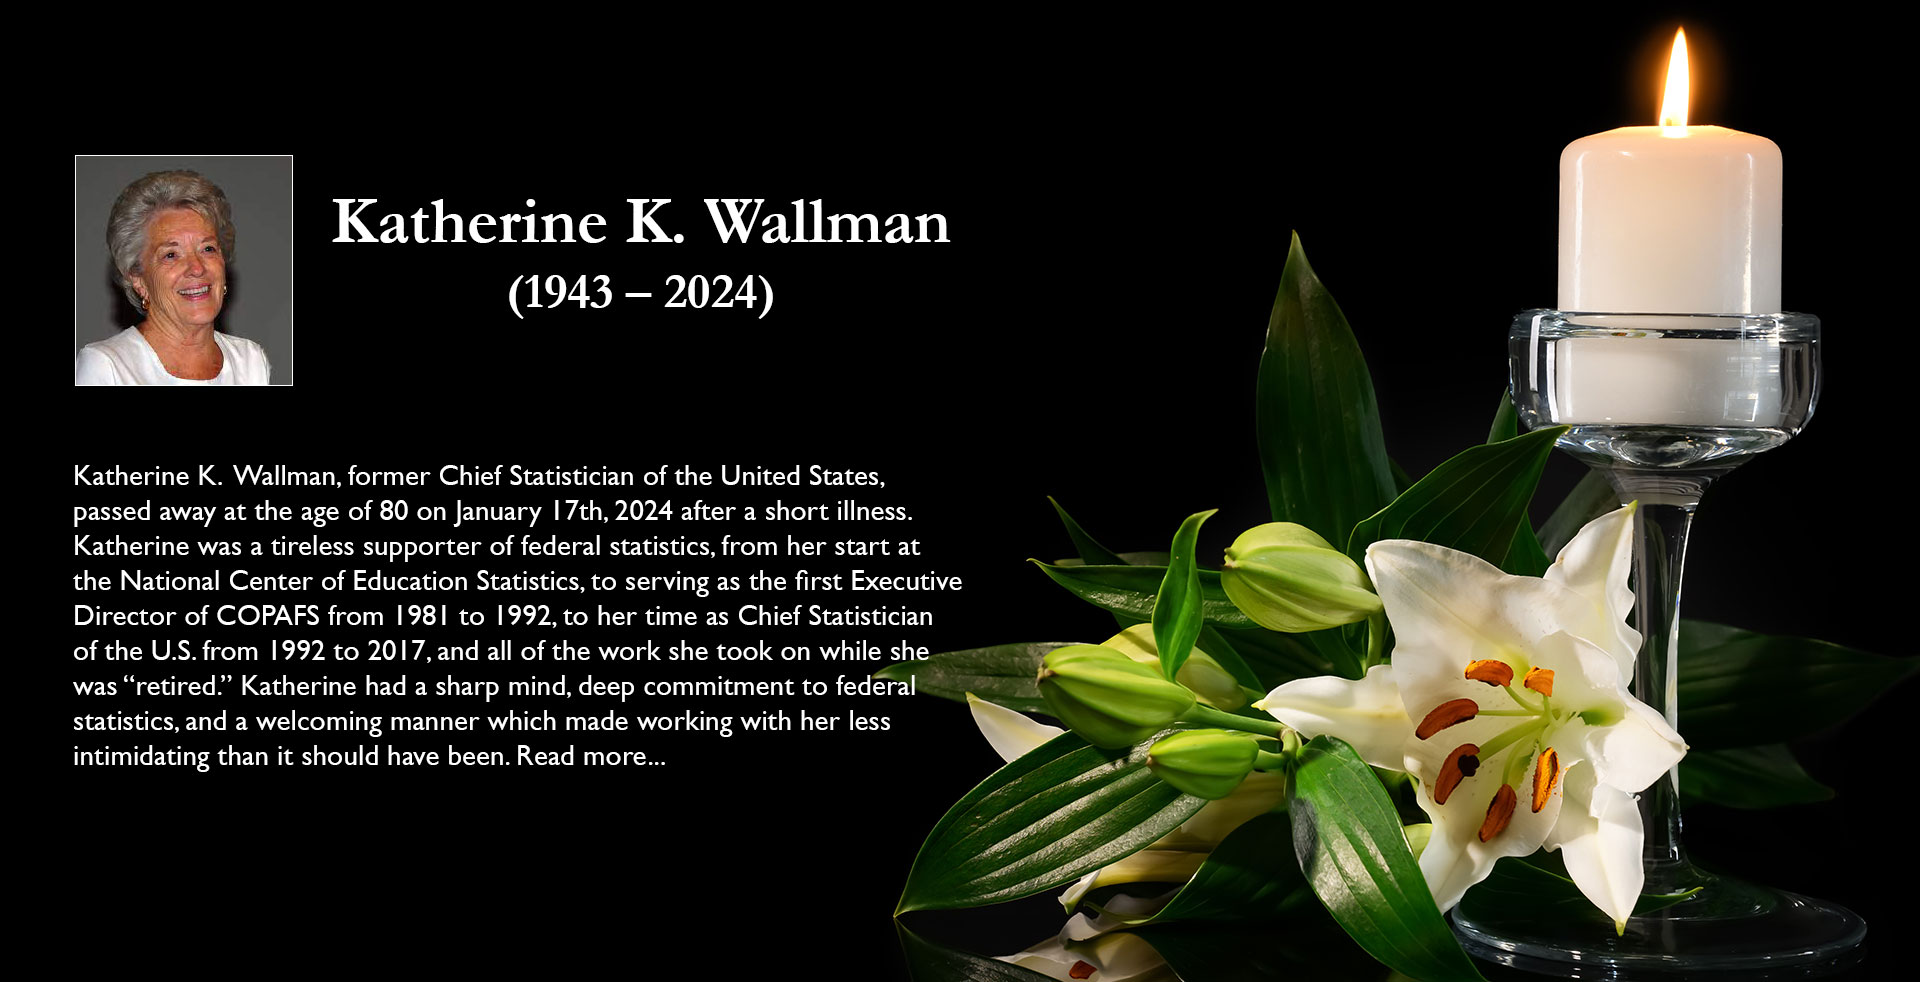 Katherine Wallman